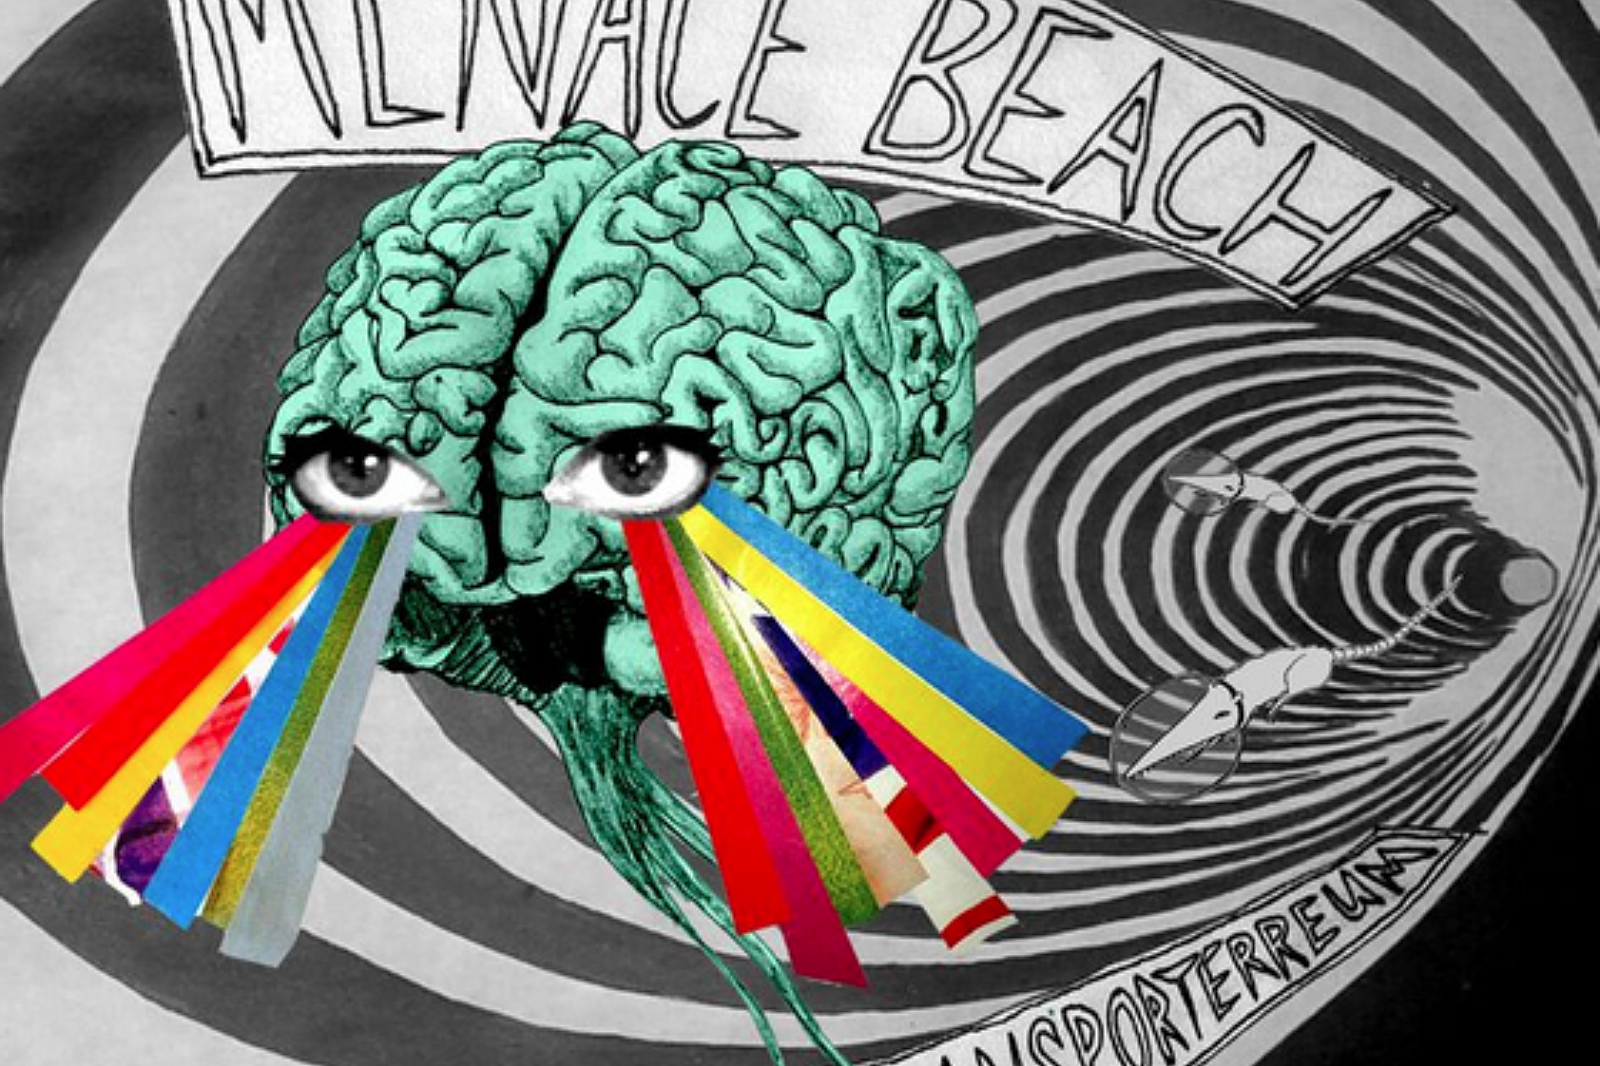 Menace Beach - Super Transporterreum EP